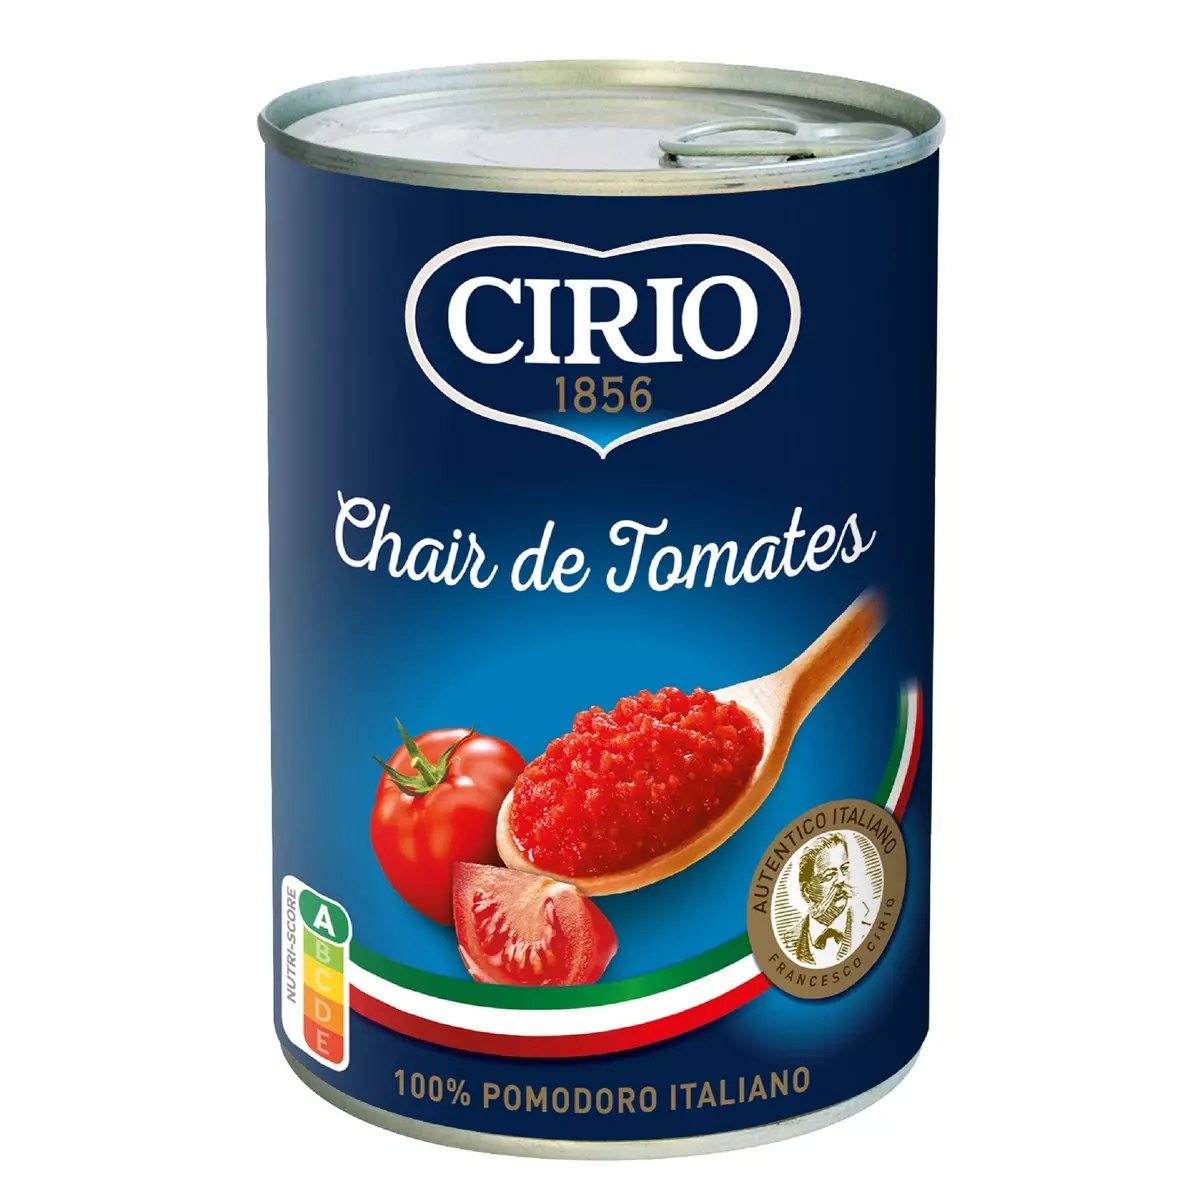 CIRIO Chair de tomates 400g